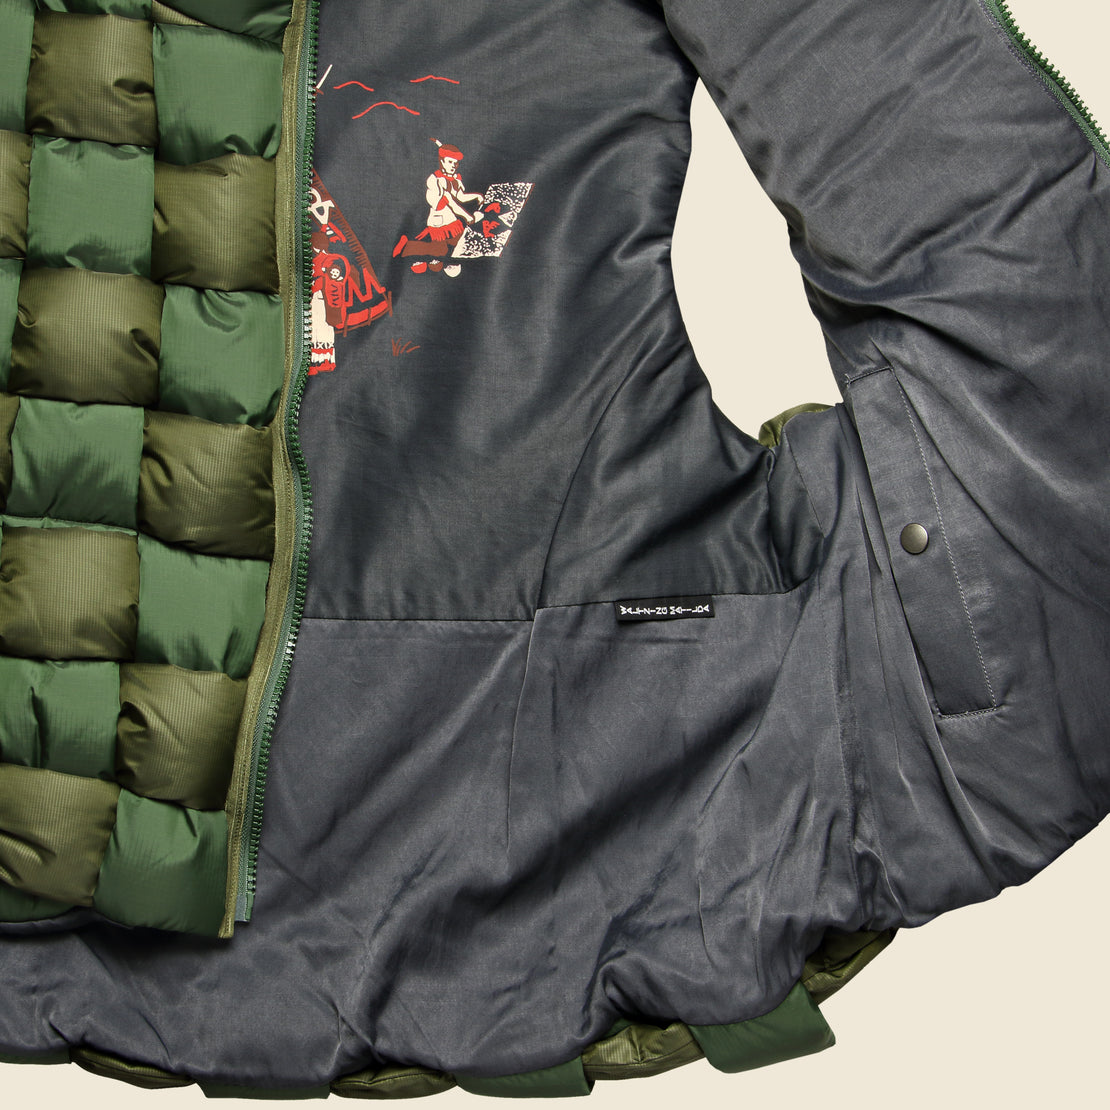 Keel-Weaving Ripstop Nylon Vest - Khaki